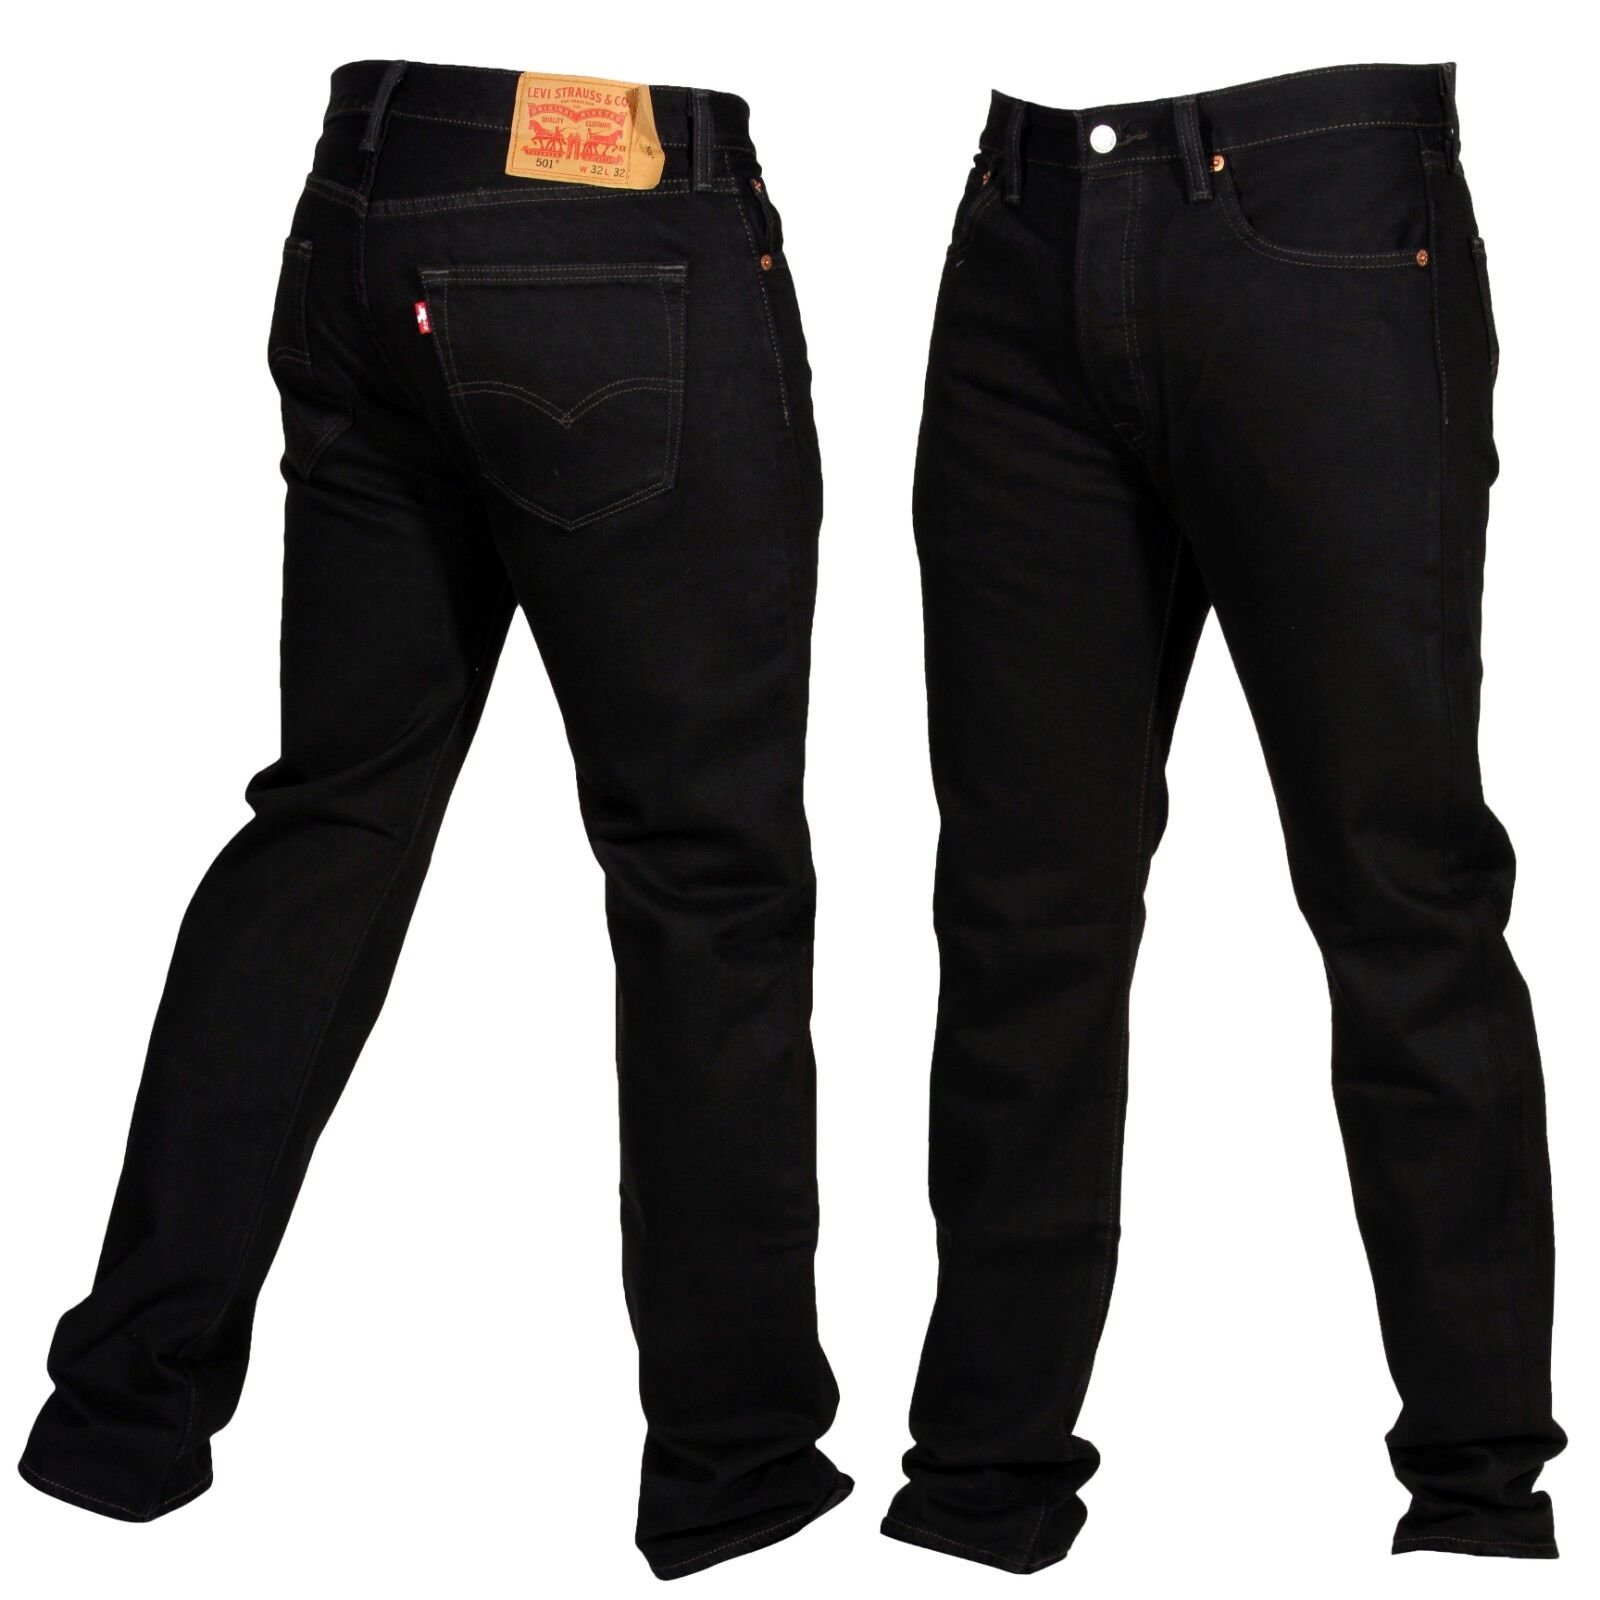 Levis 501 Original Fit Mens Jeans Straight Leg Button Fly 100% Cotton Black